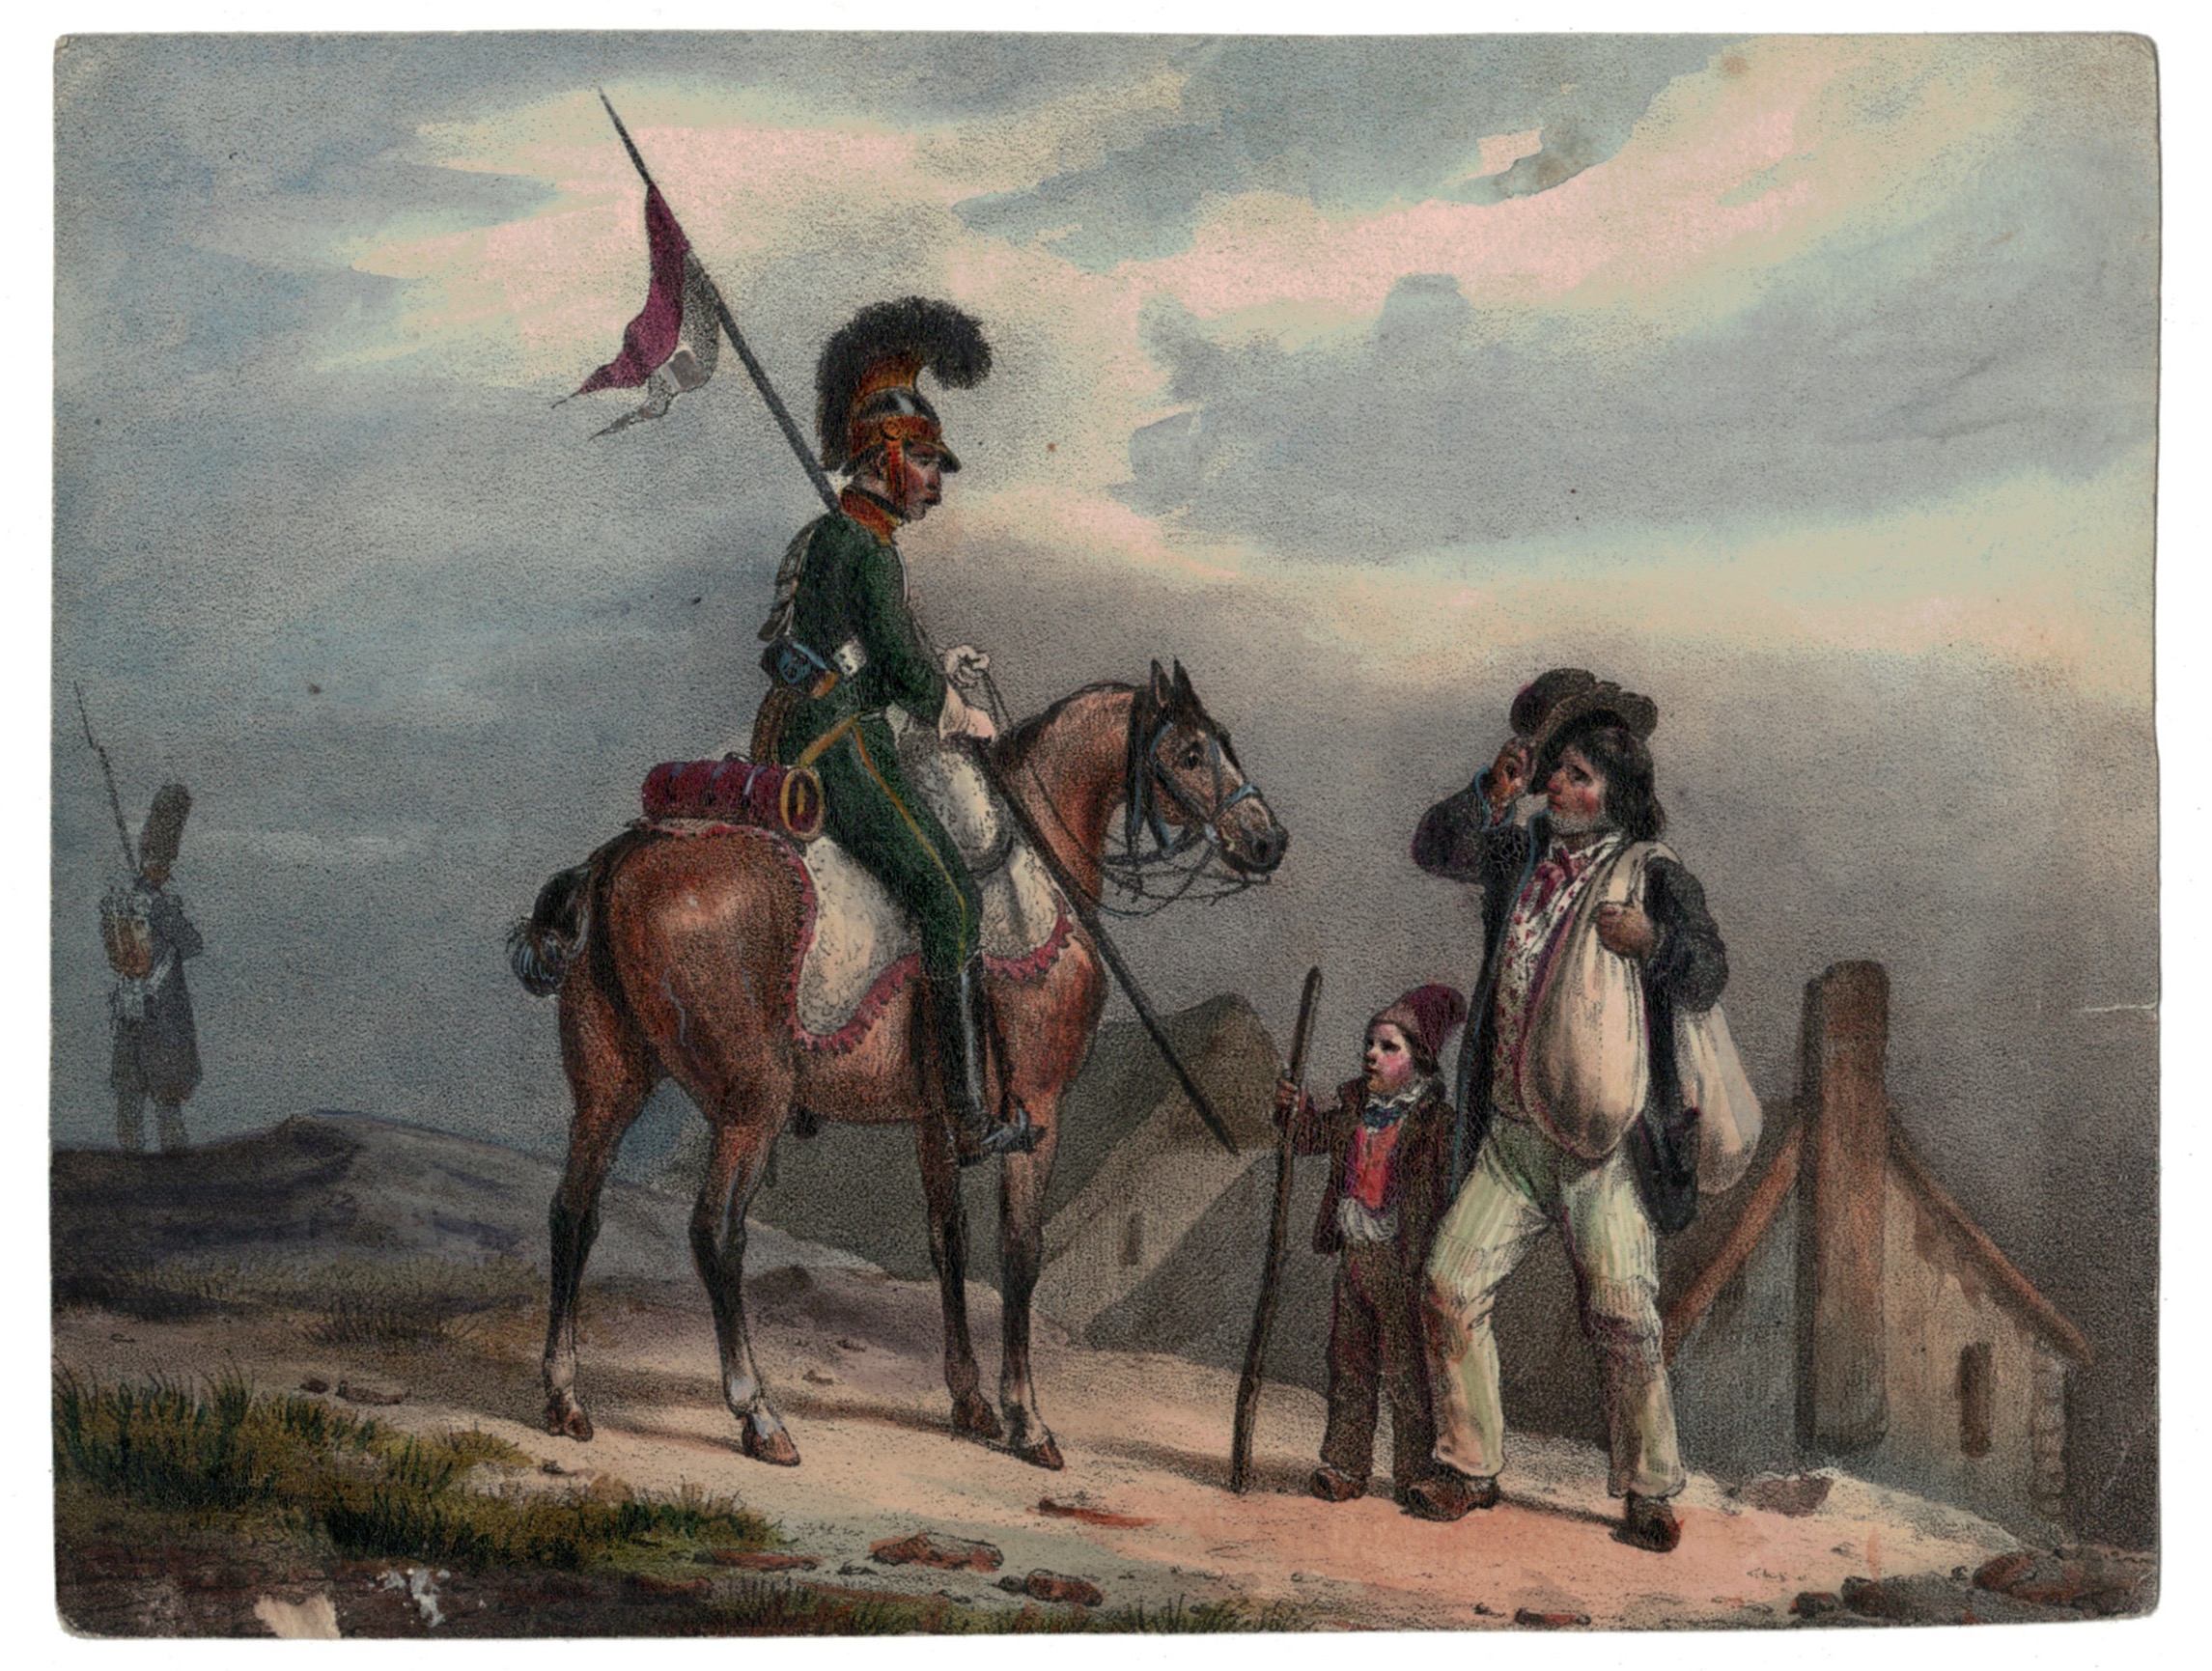 Gravure XIX - Cavalier - Empire 1815 - Charlet, Nicolas Toussaint - Hippolyte Bellangé - Victor Adam - Vie du Soldat - Militaire